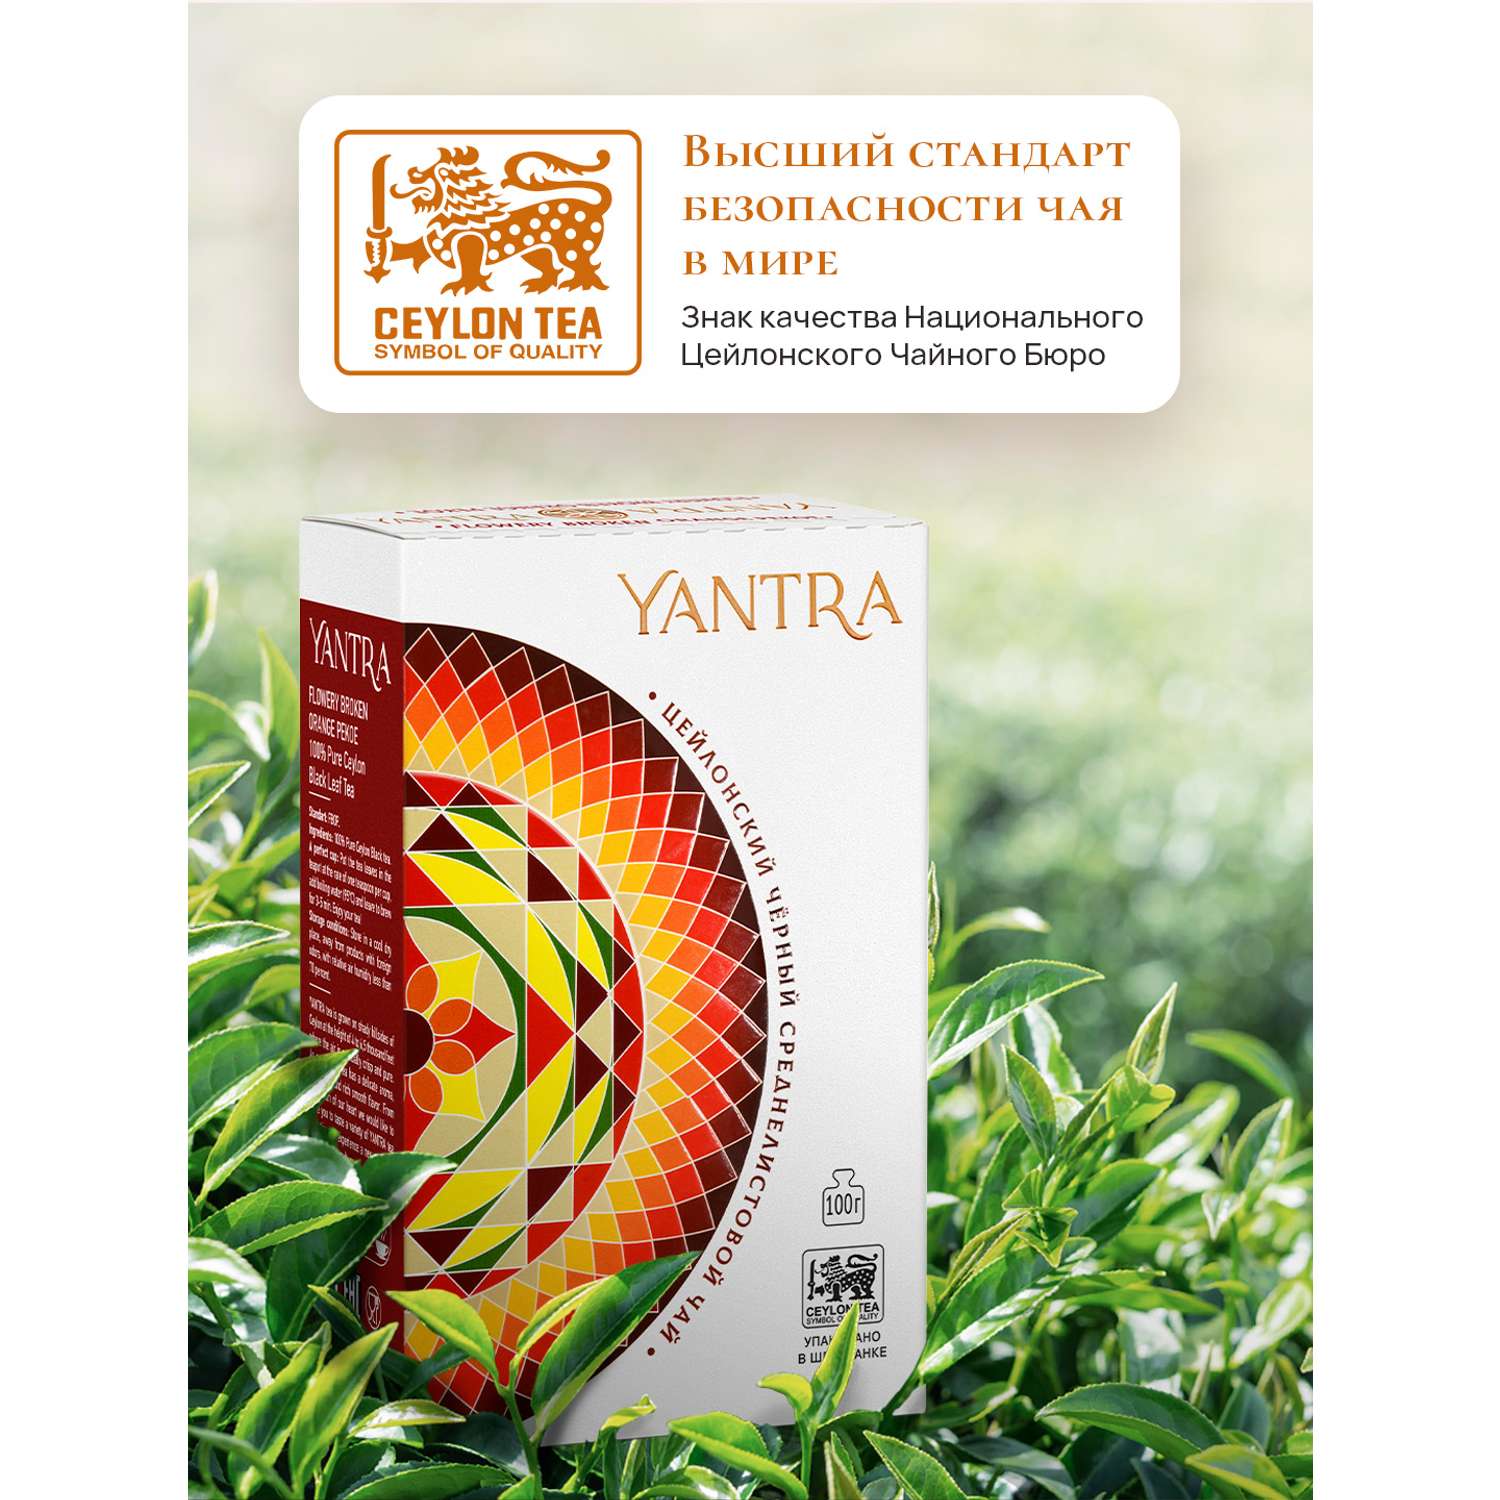 Чай Классик Yantra черный среднелистовой стандарт FBOP 100 г - фото 3